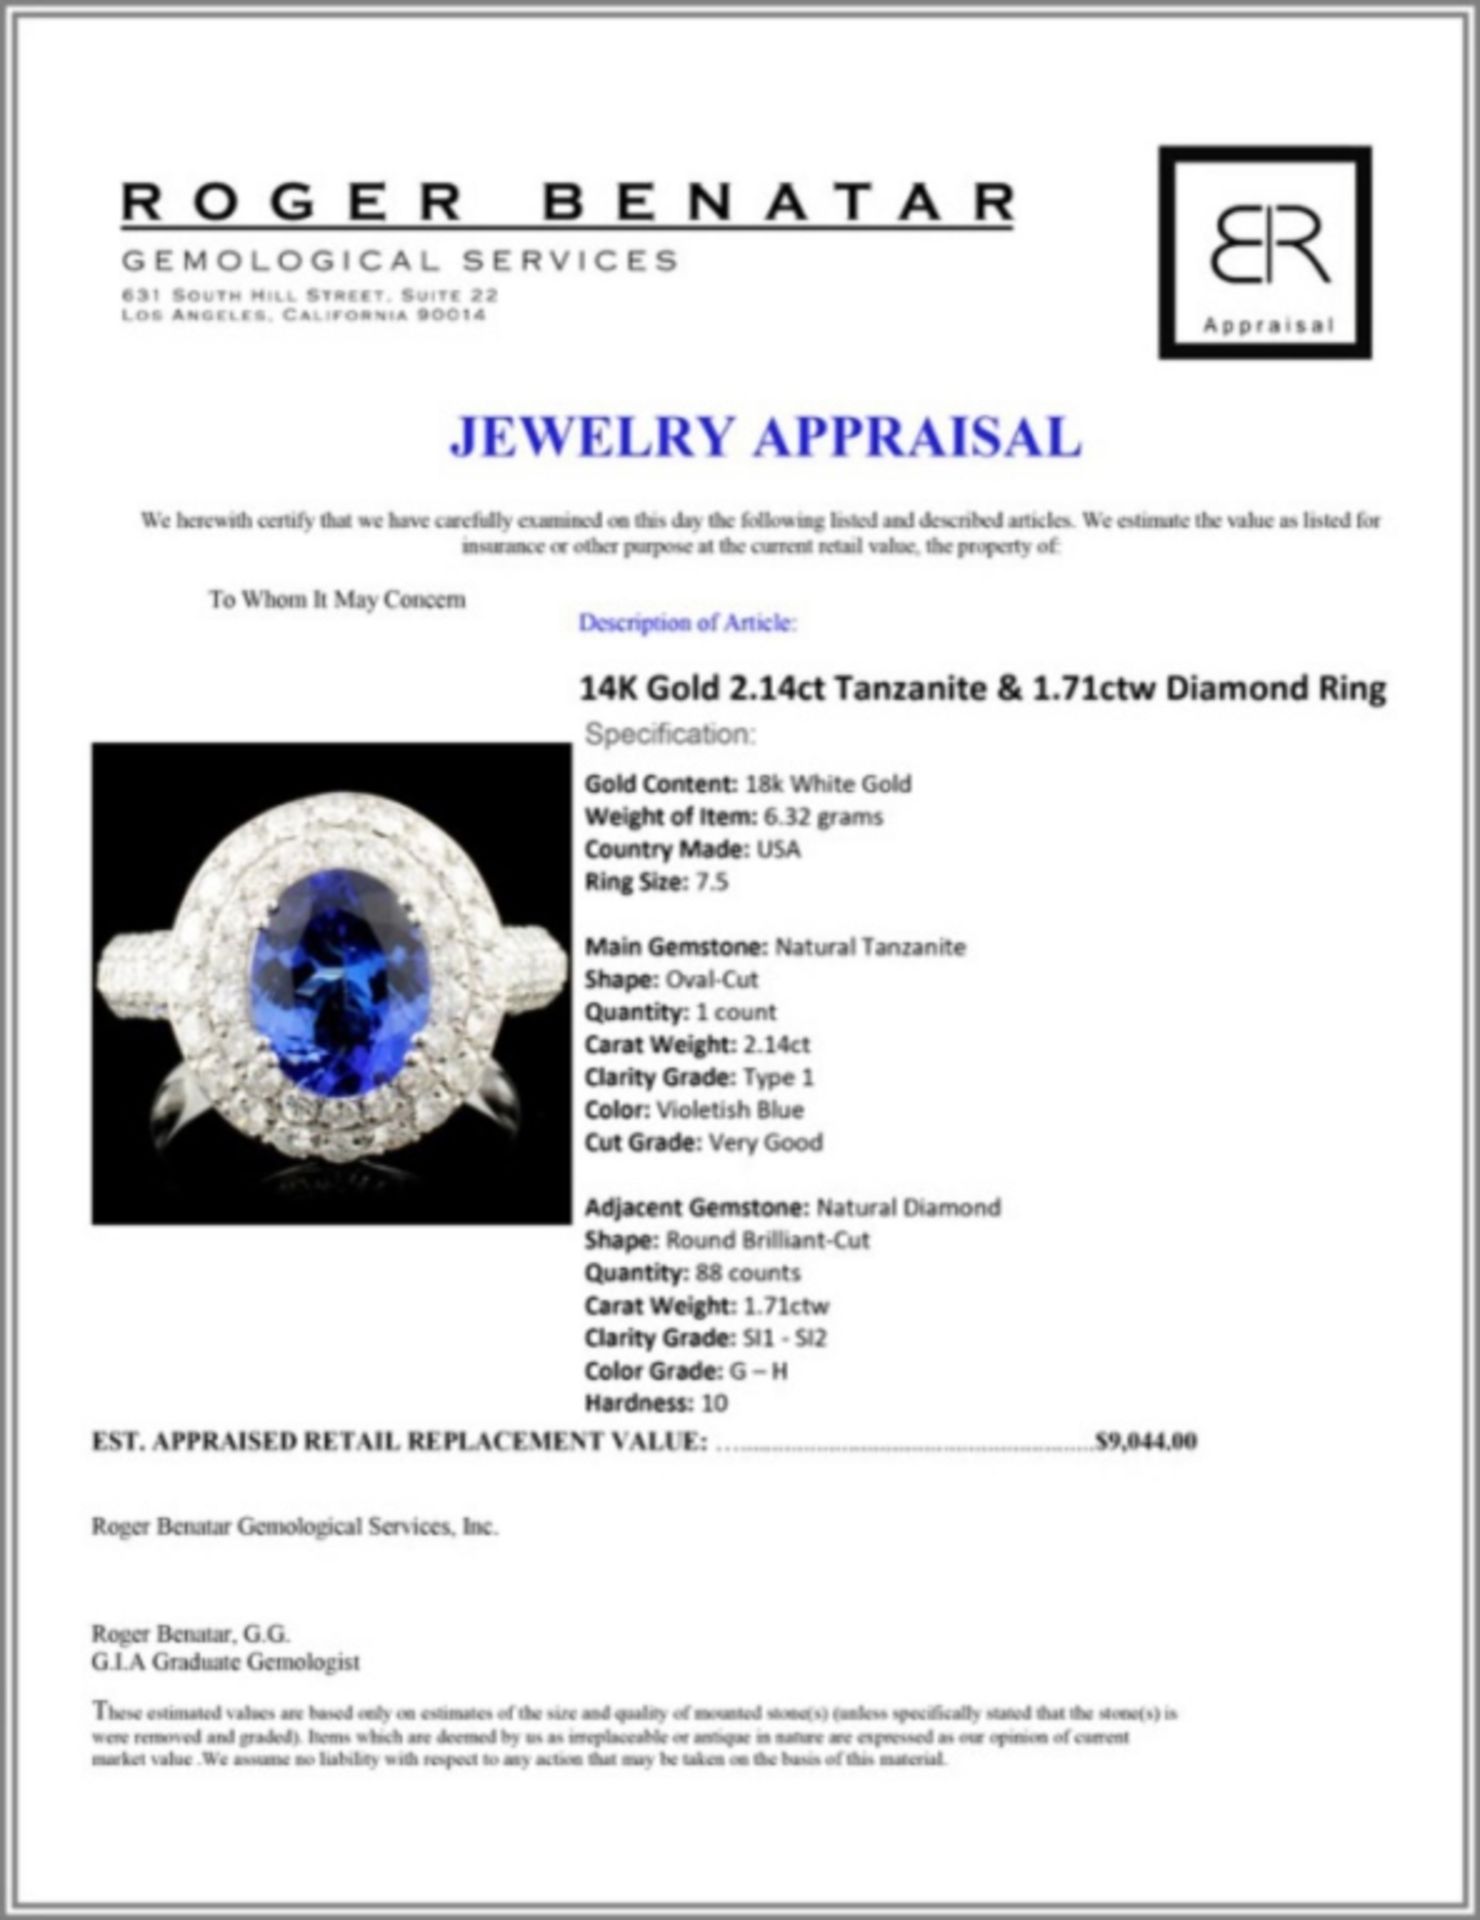 14K Gold 2.14ct Tanzanite & 1.71ctw Diamond Ring - Image 5 of 5